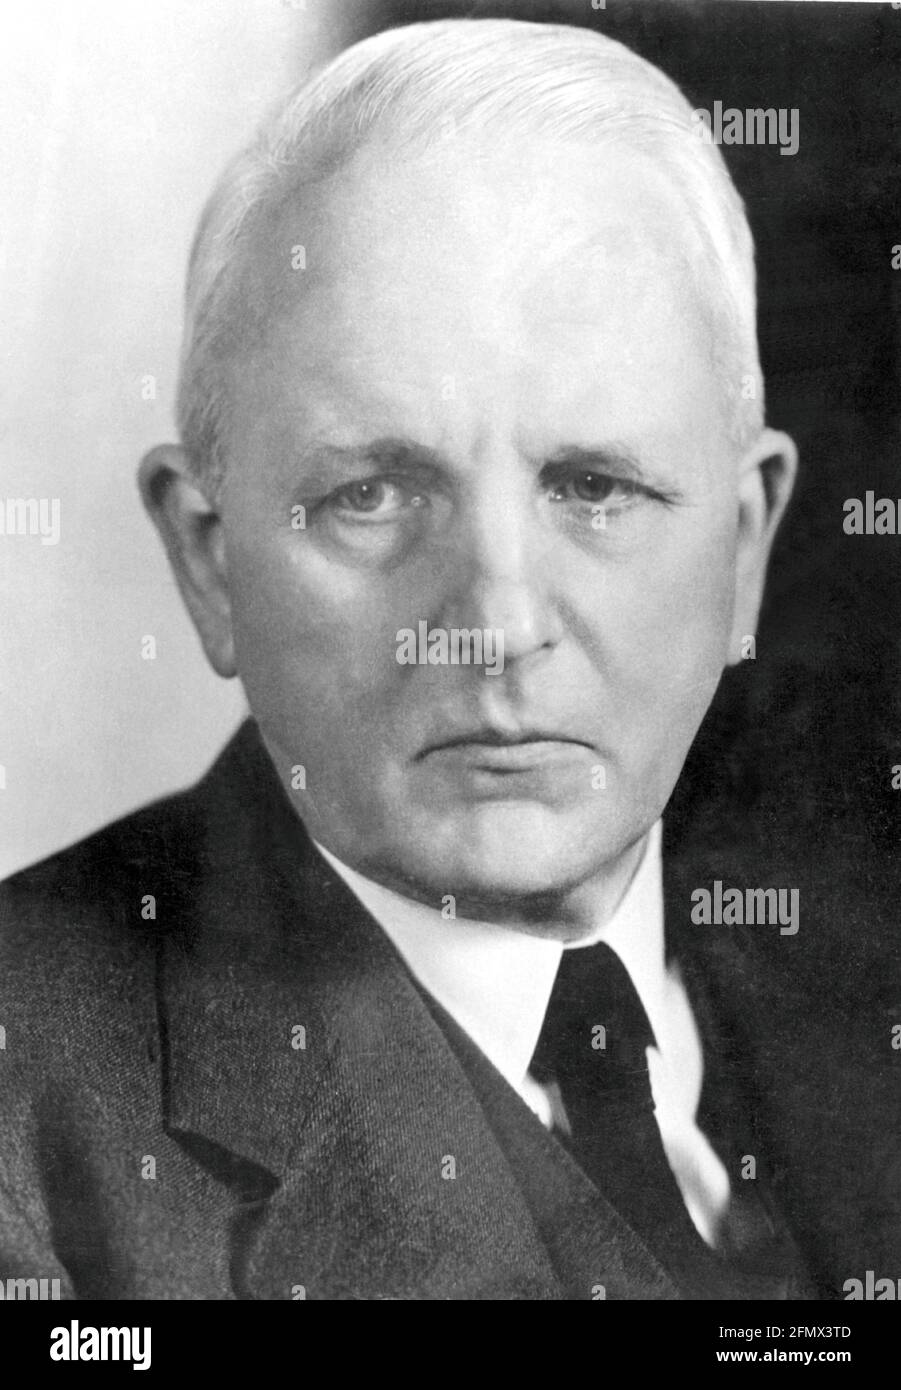 Weizsaecker, Ernst von, 25.5.1882 - 4.8.1951, German diplomat, portrait, 1940s, EDITORIAL-USE-ONLY Stock Photo